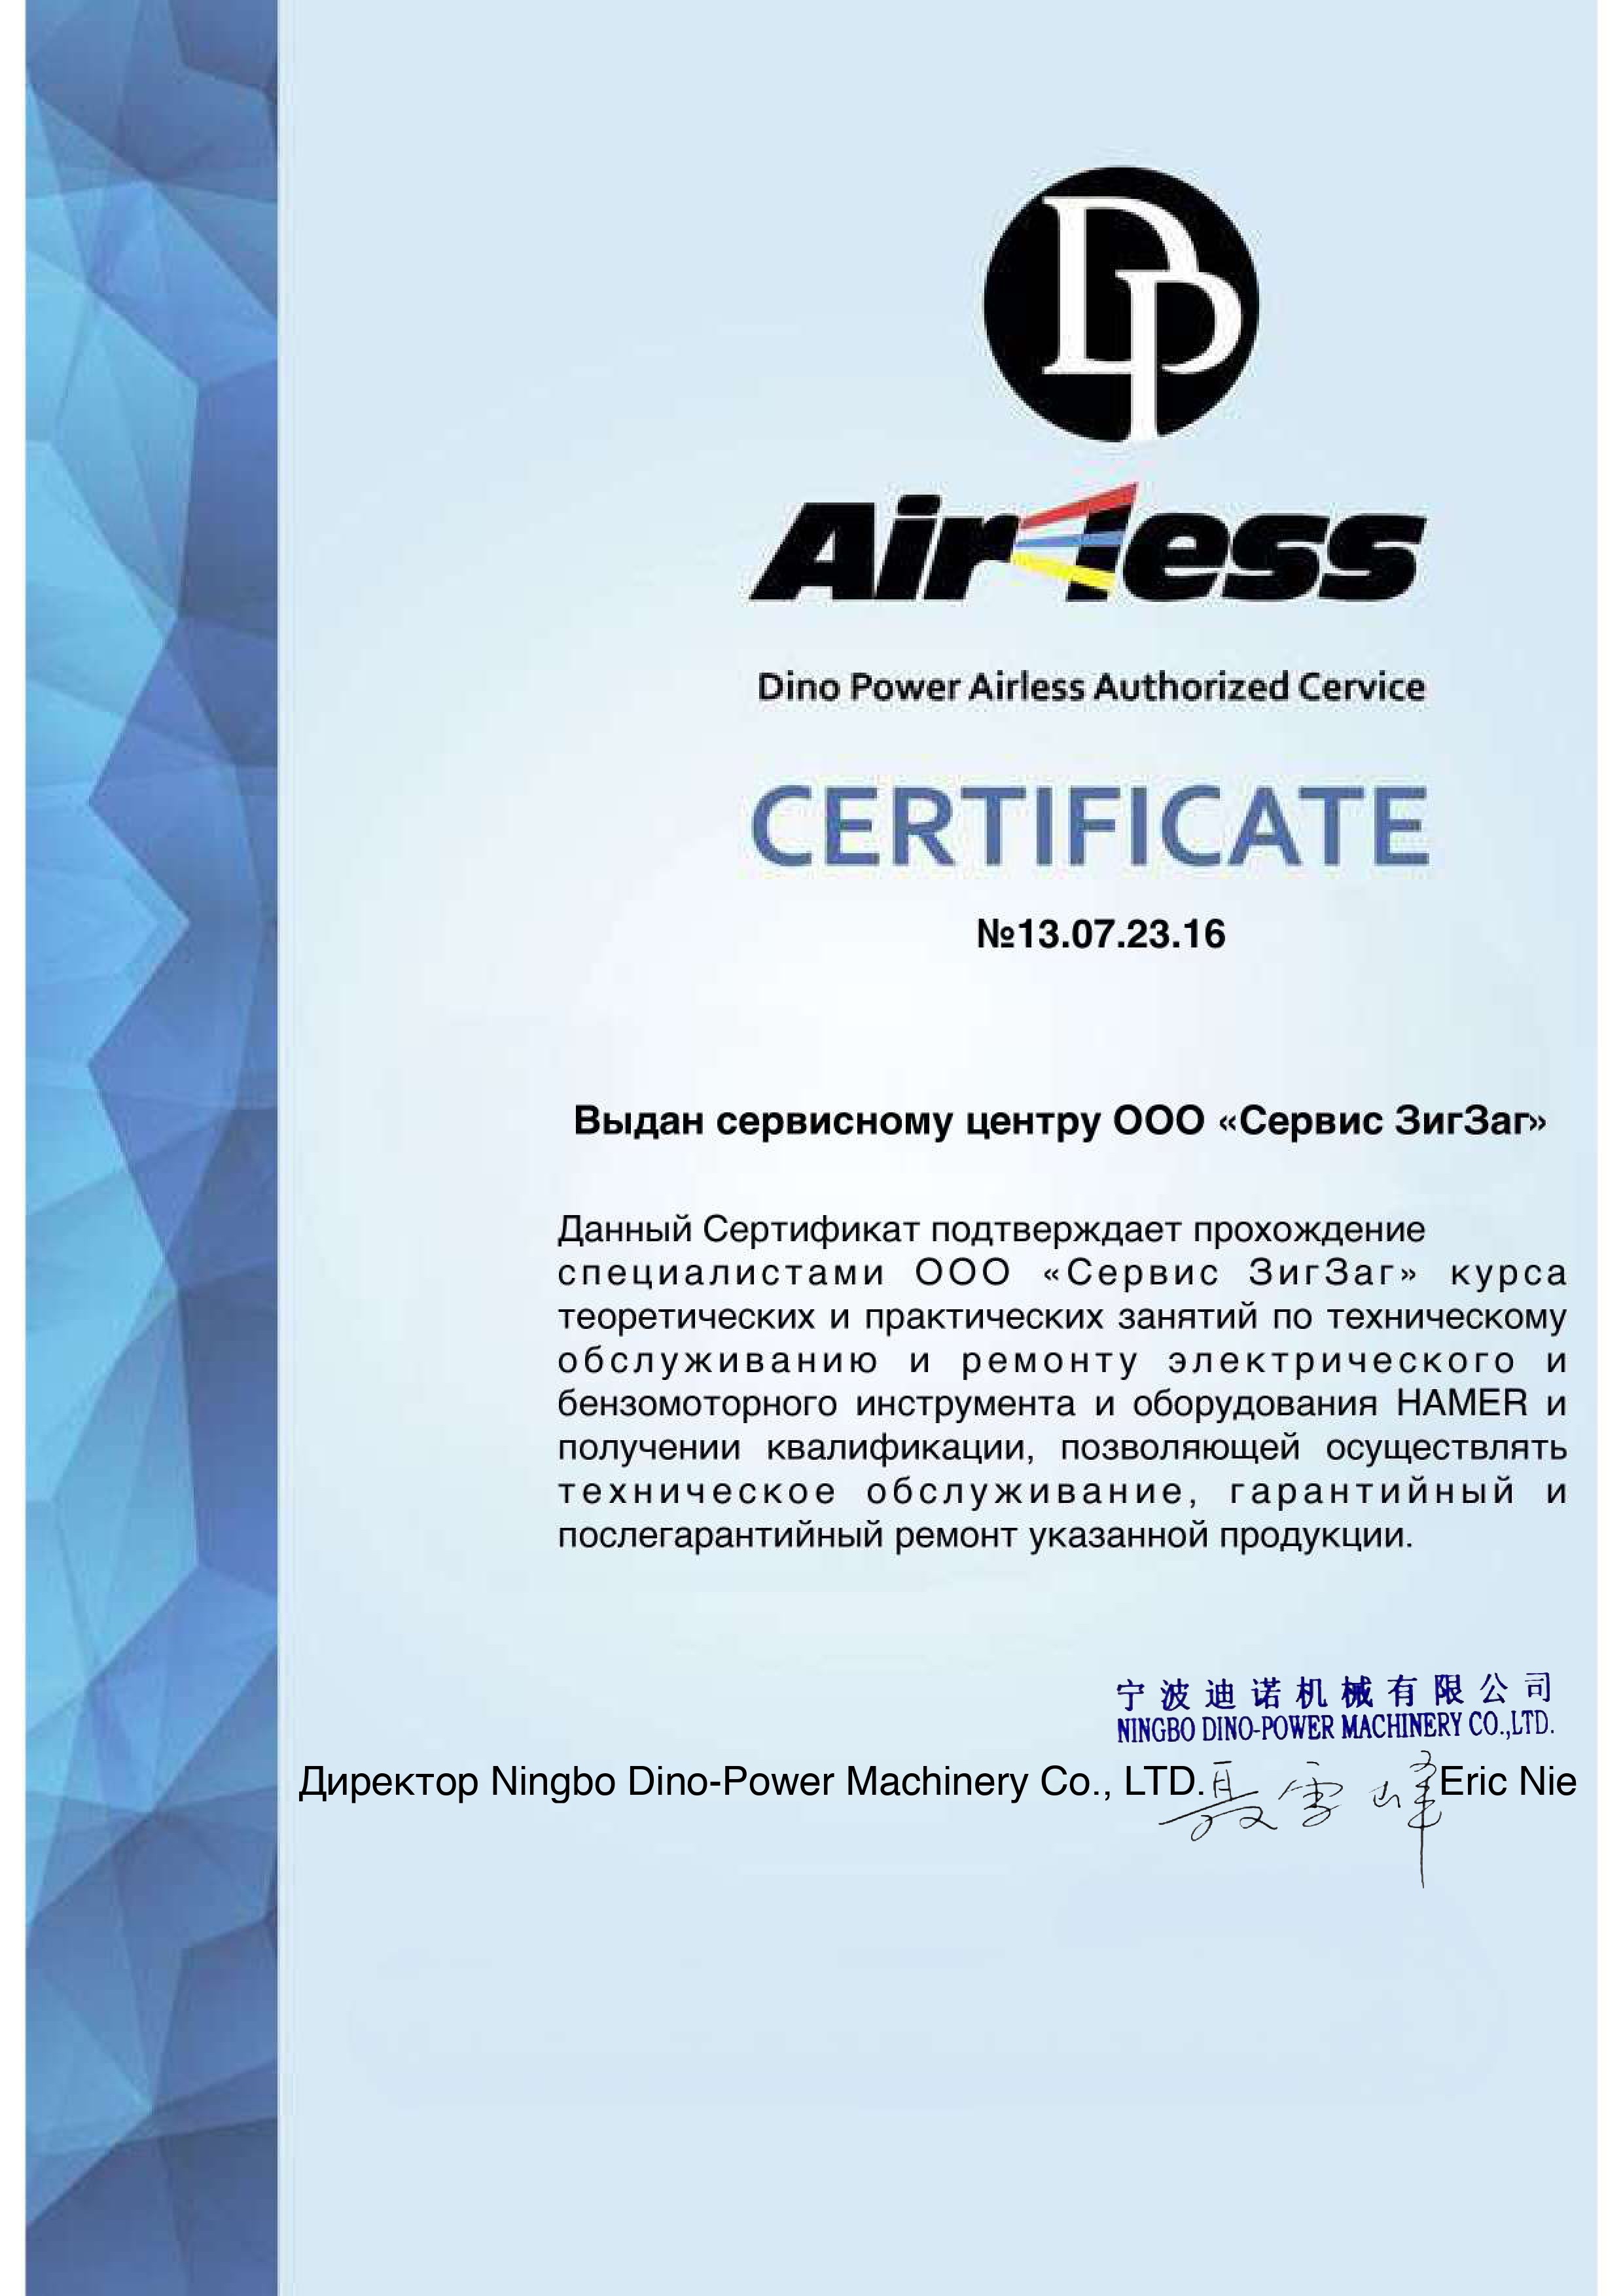 сертификат DinoPower